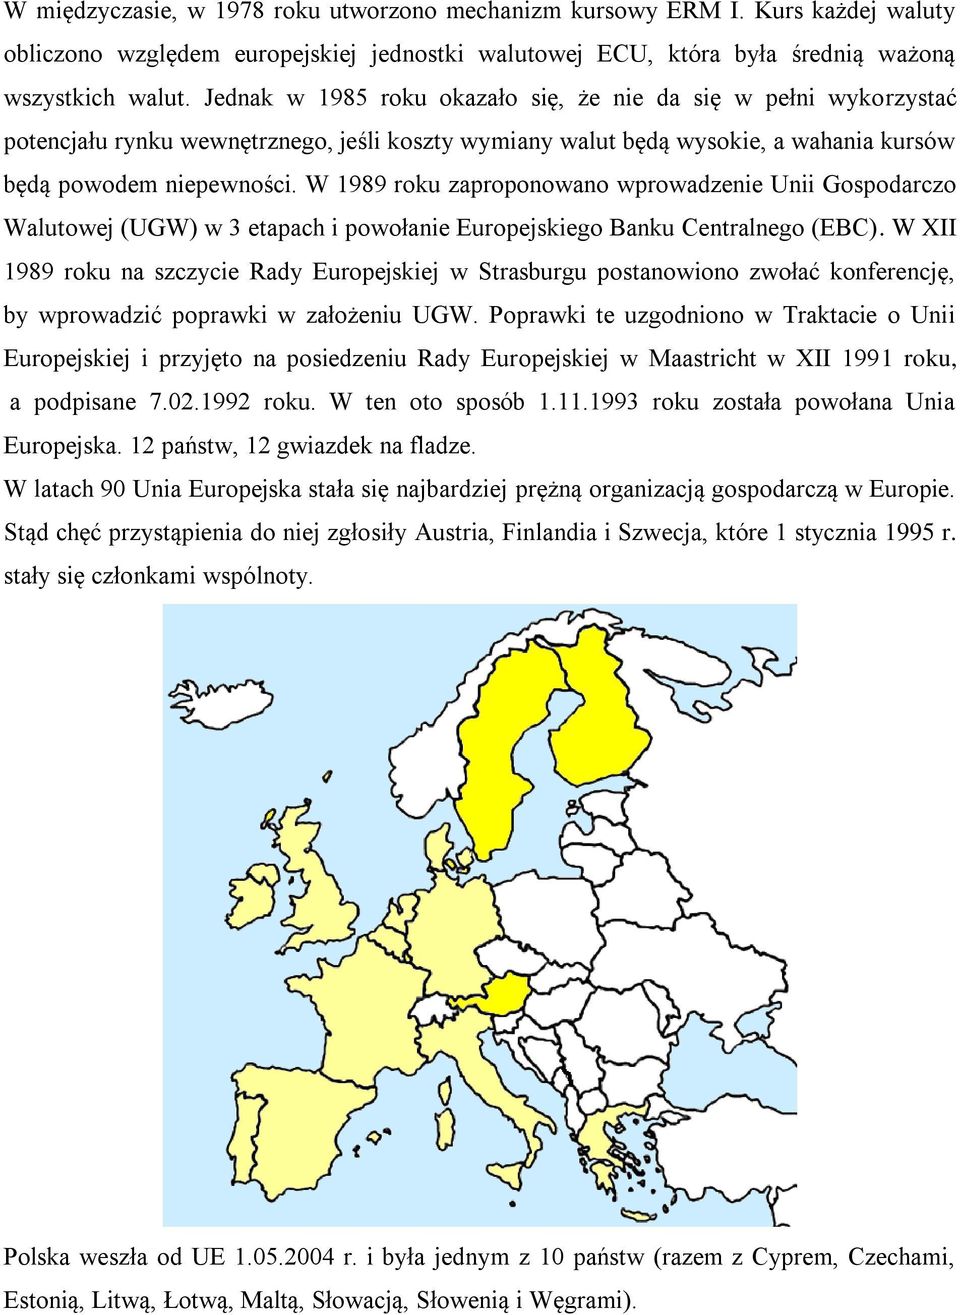 W 1989 roku zaproponowano wprowadzenie Unii Gospodarczo Walutowej (UGW) w 3 etapach i powołanie Europejskiego Banku Centralnego (EBC).